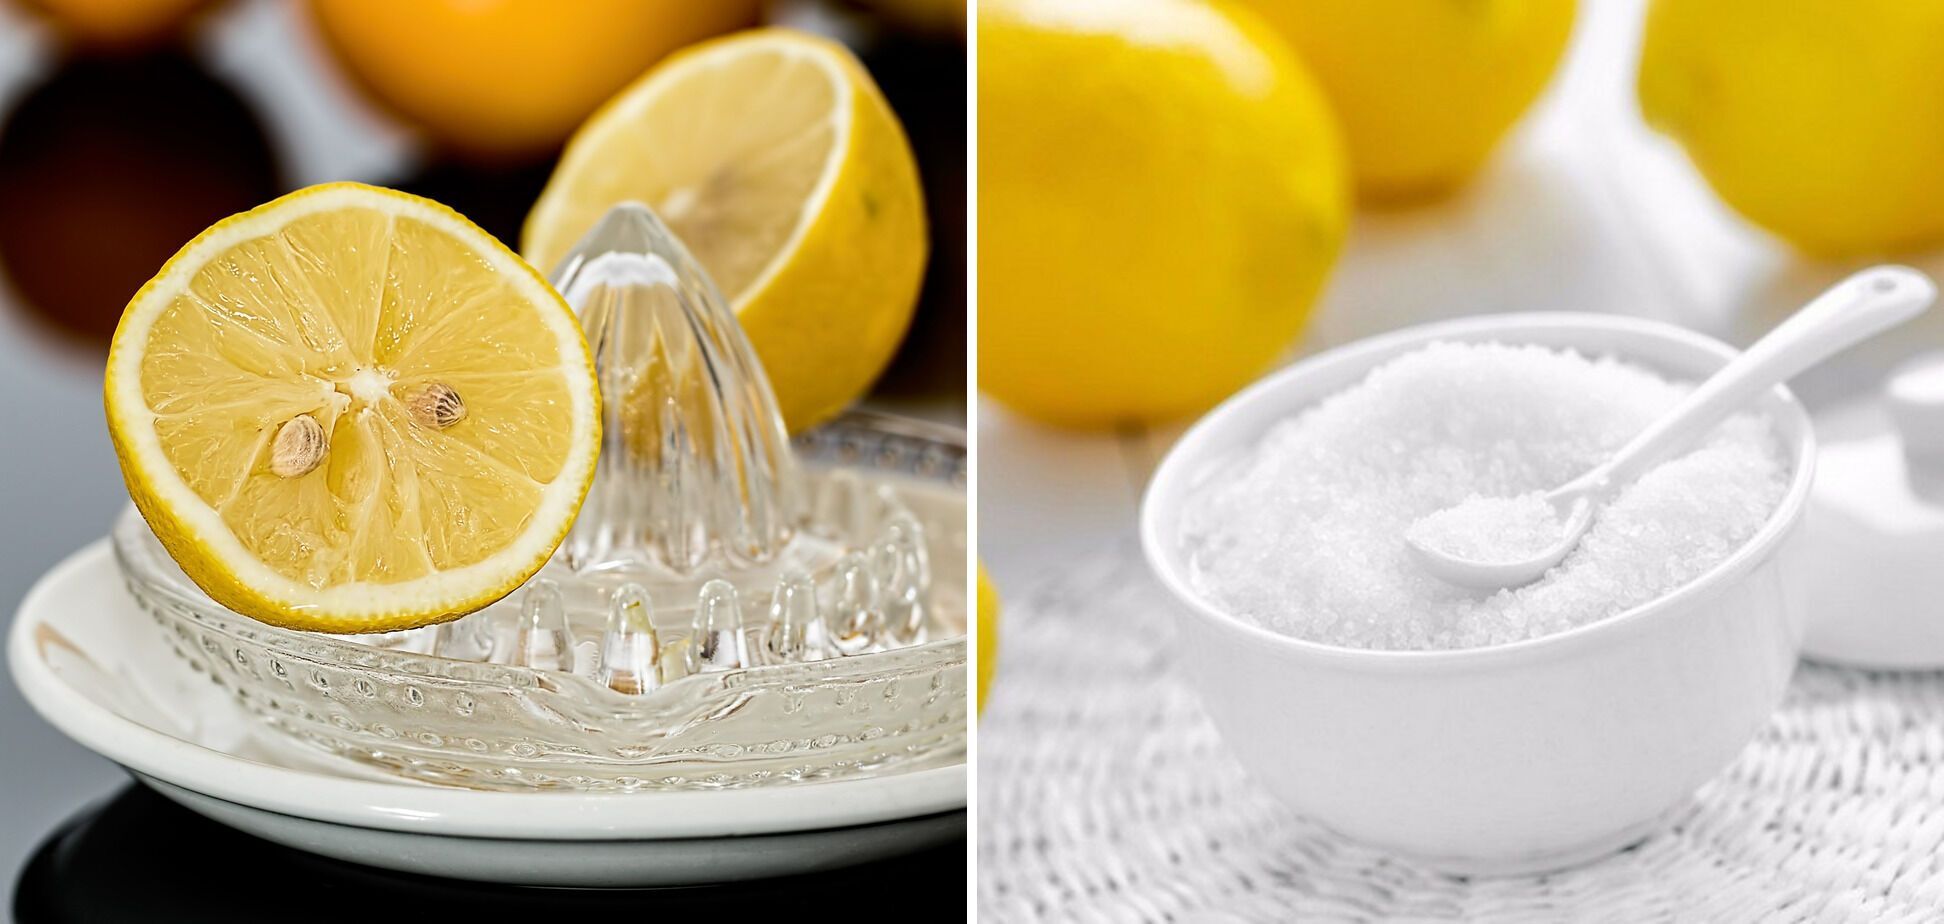 Making lemon juice